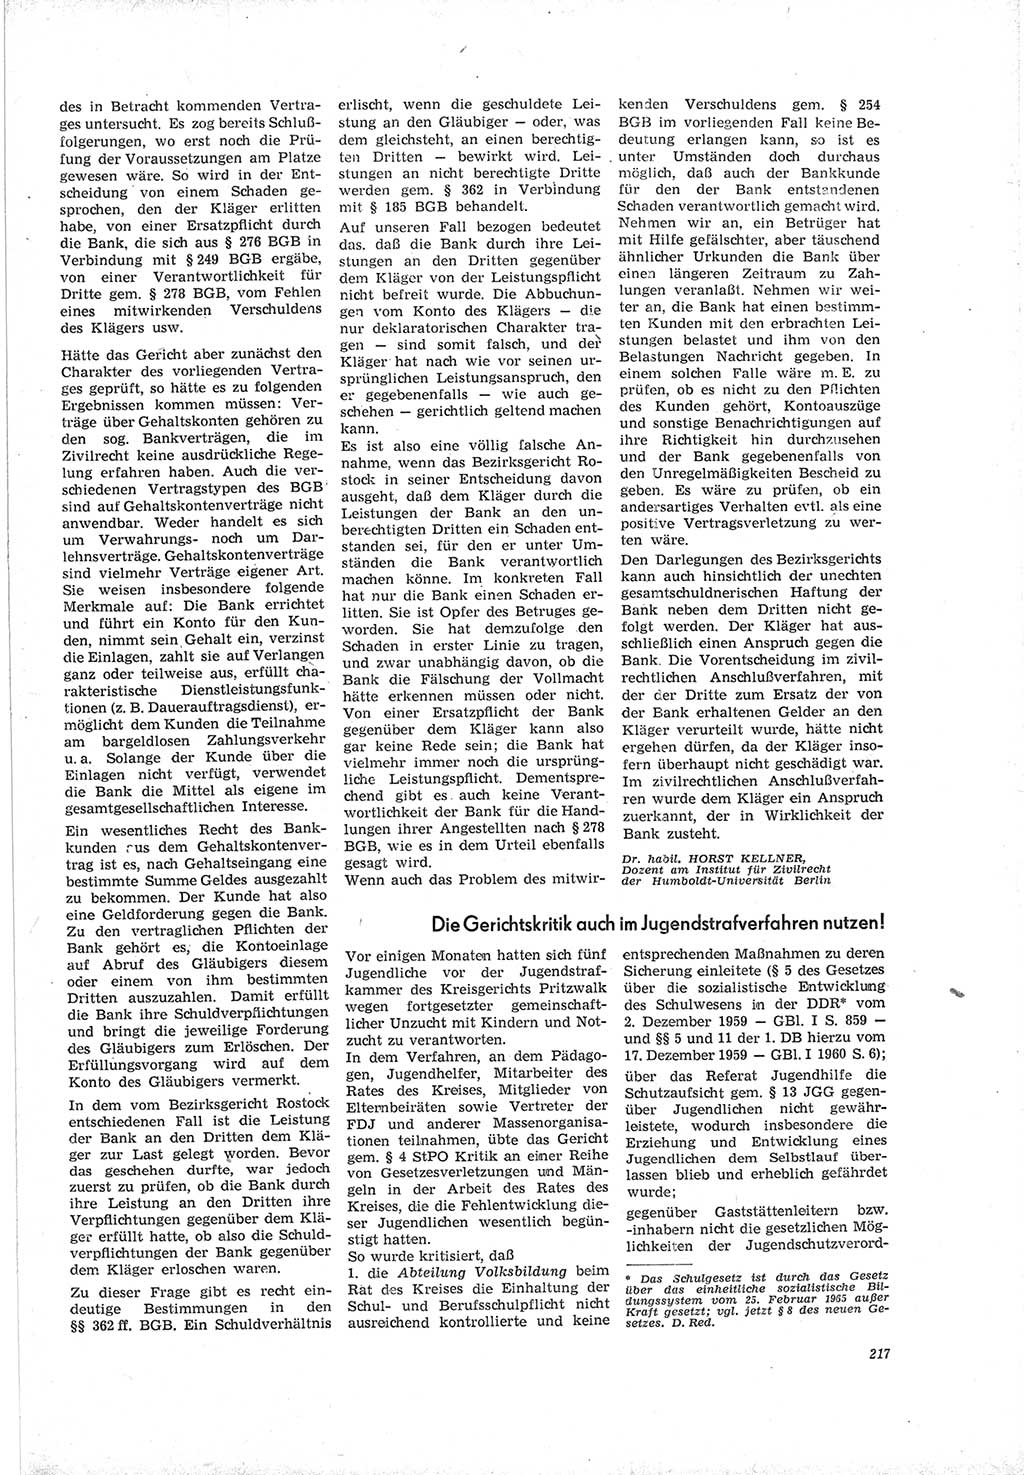 Neue Justiz (NJ), Zeitschrift für Recht und Rechtswissenschaft [Deutsche Demokratische Republik (DDR)], 19. Jahrgang 1965, Seite 217 (NJ DDR 1965, S. 217)